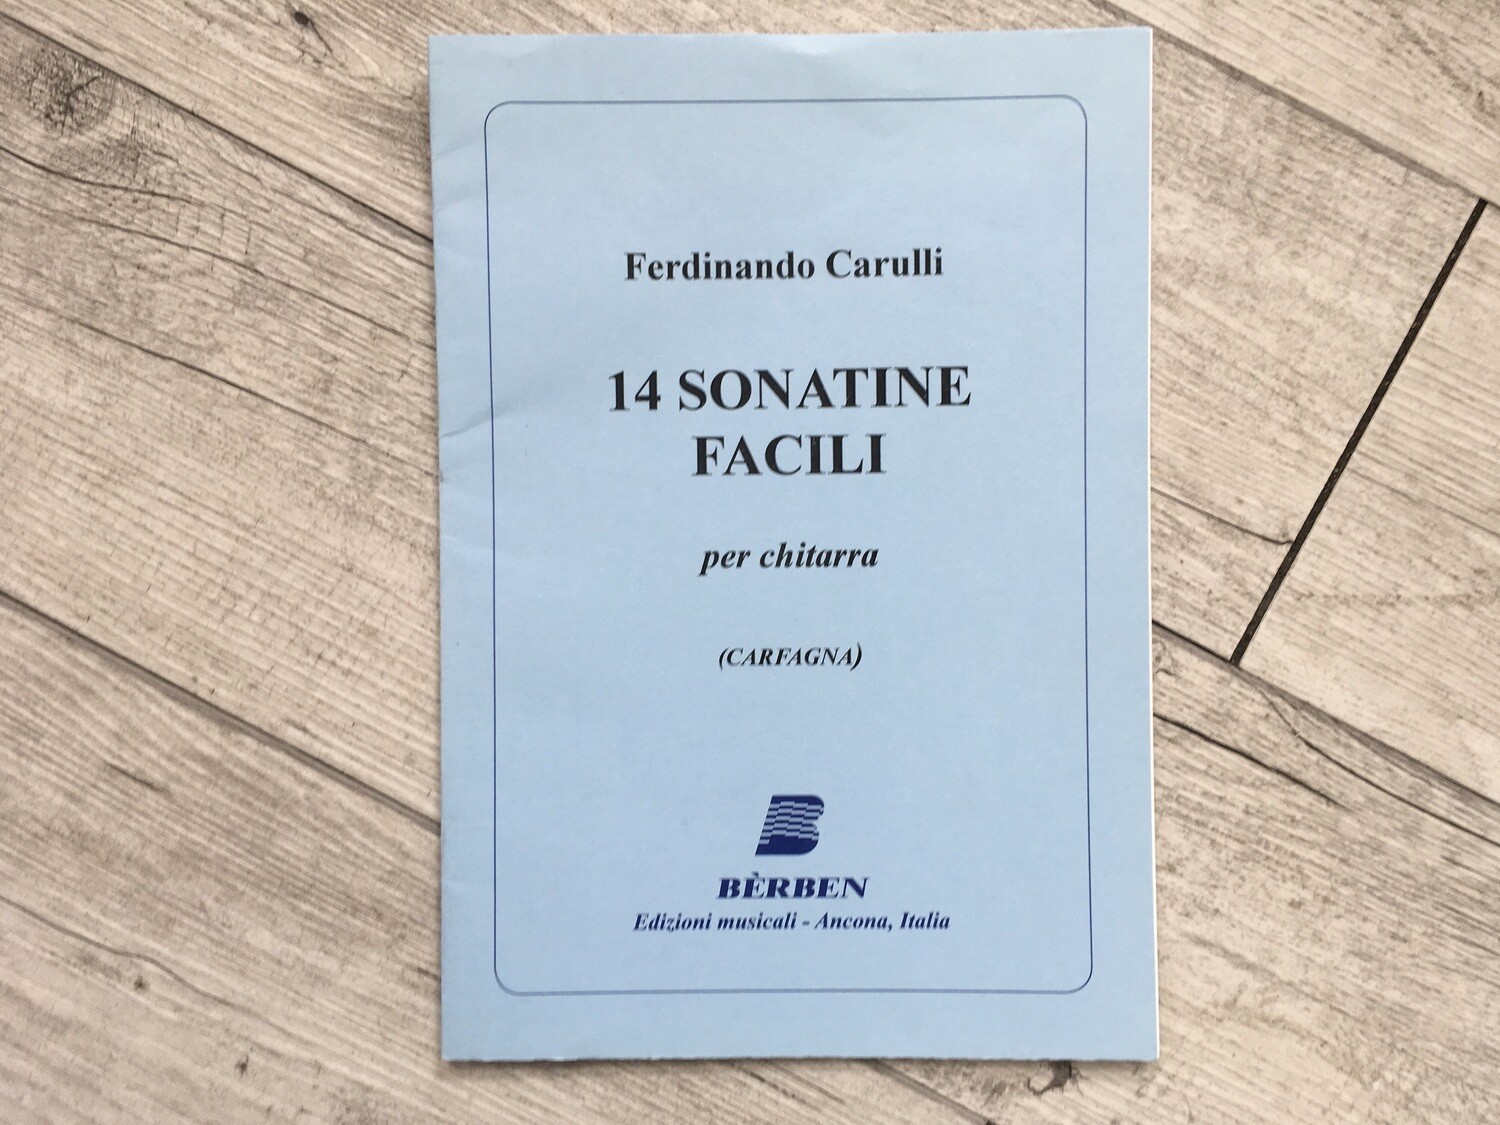 FERDINANDO CARULLI - 14 sonatine facili per chitarra